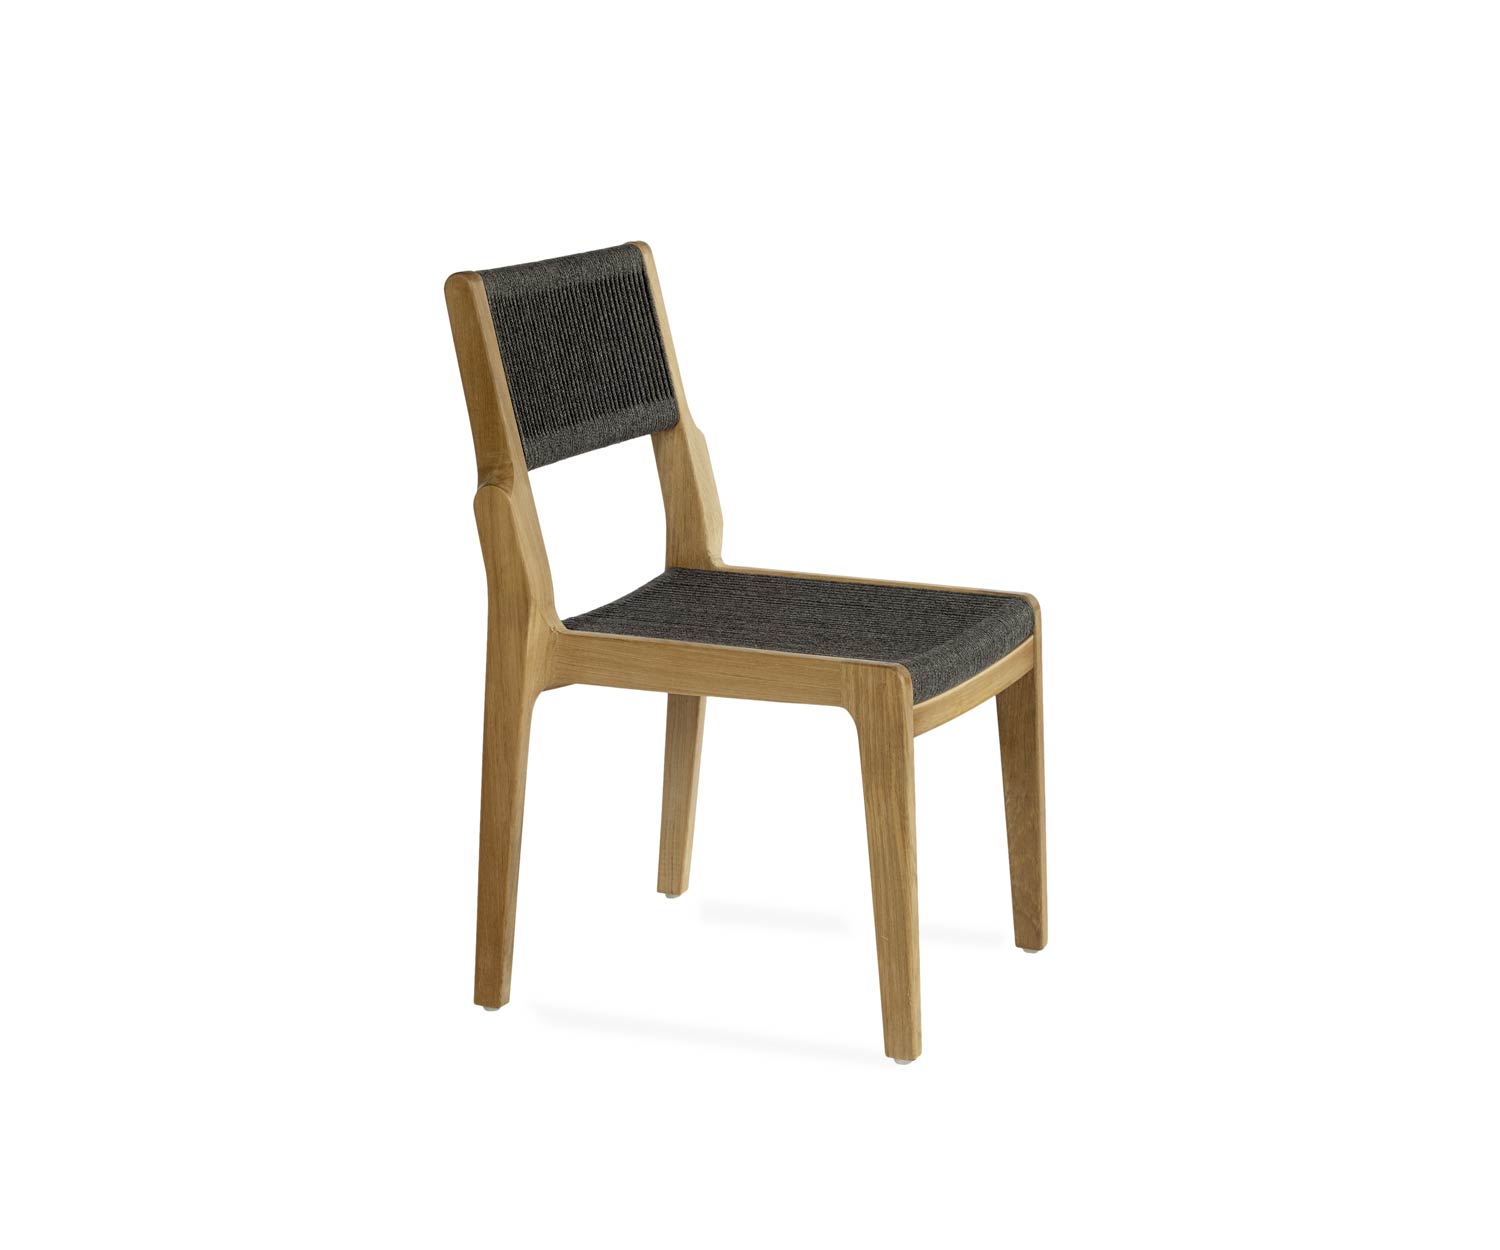 Esclusiva sedia di design Oasiq Skagen in teak con rivestimento in corda intrecciata a mano